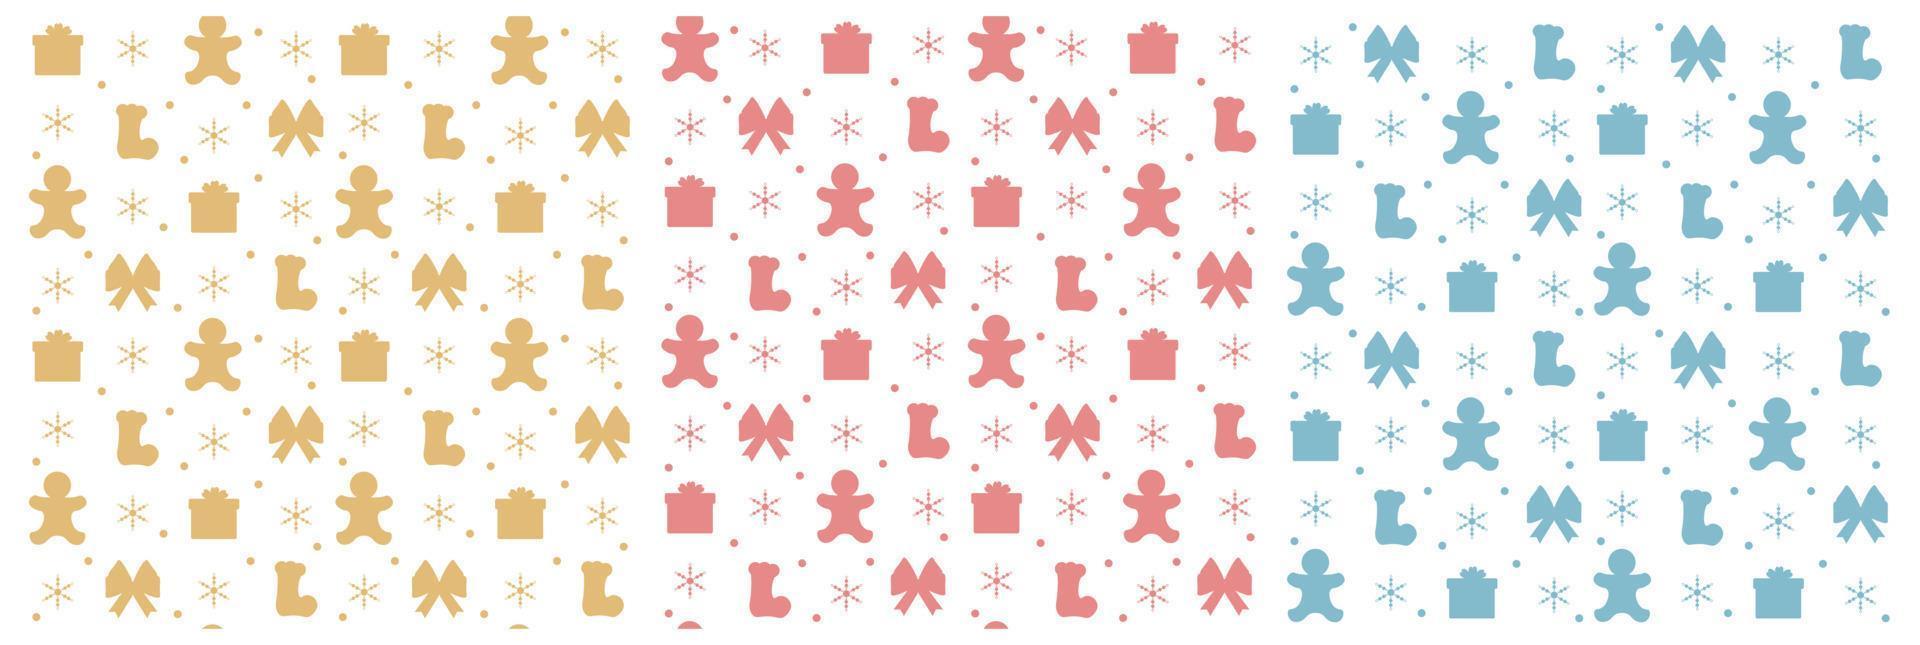 diseño de patrones sin fisuras de fondo de navidad con santa claus, árbol, muñeco de nieve y regalos en plantilla ilustración plana de dibujos animados dibujados a mano vector